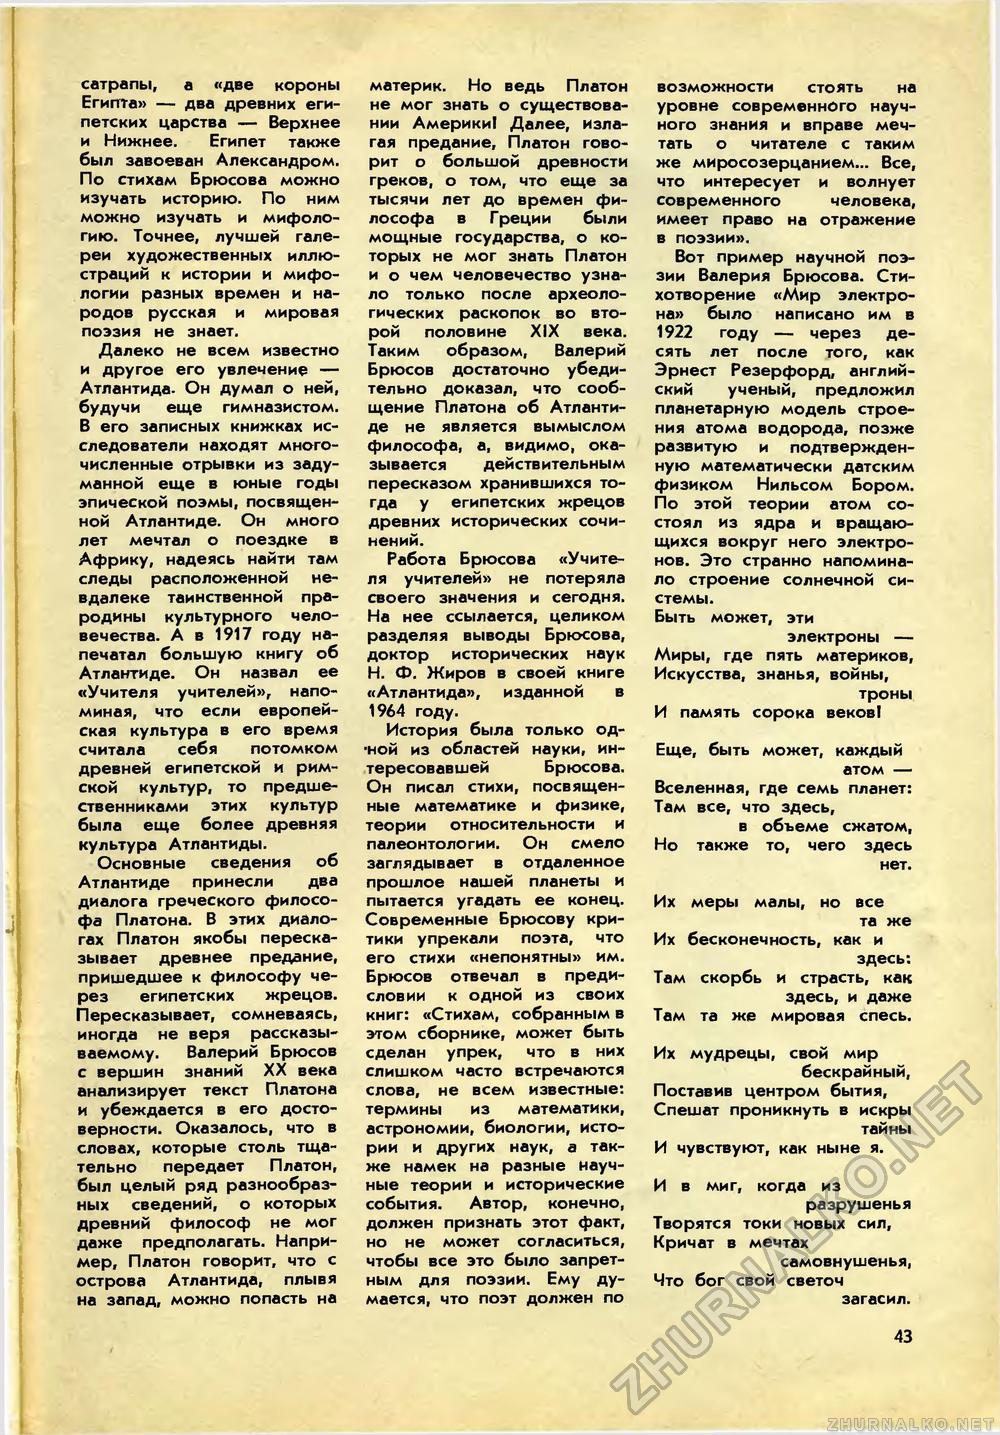   1971-07,  45